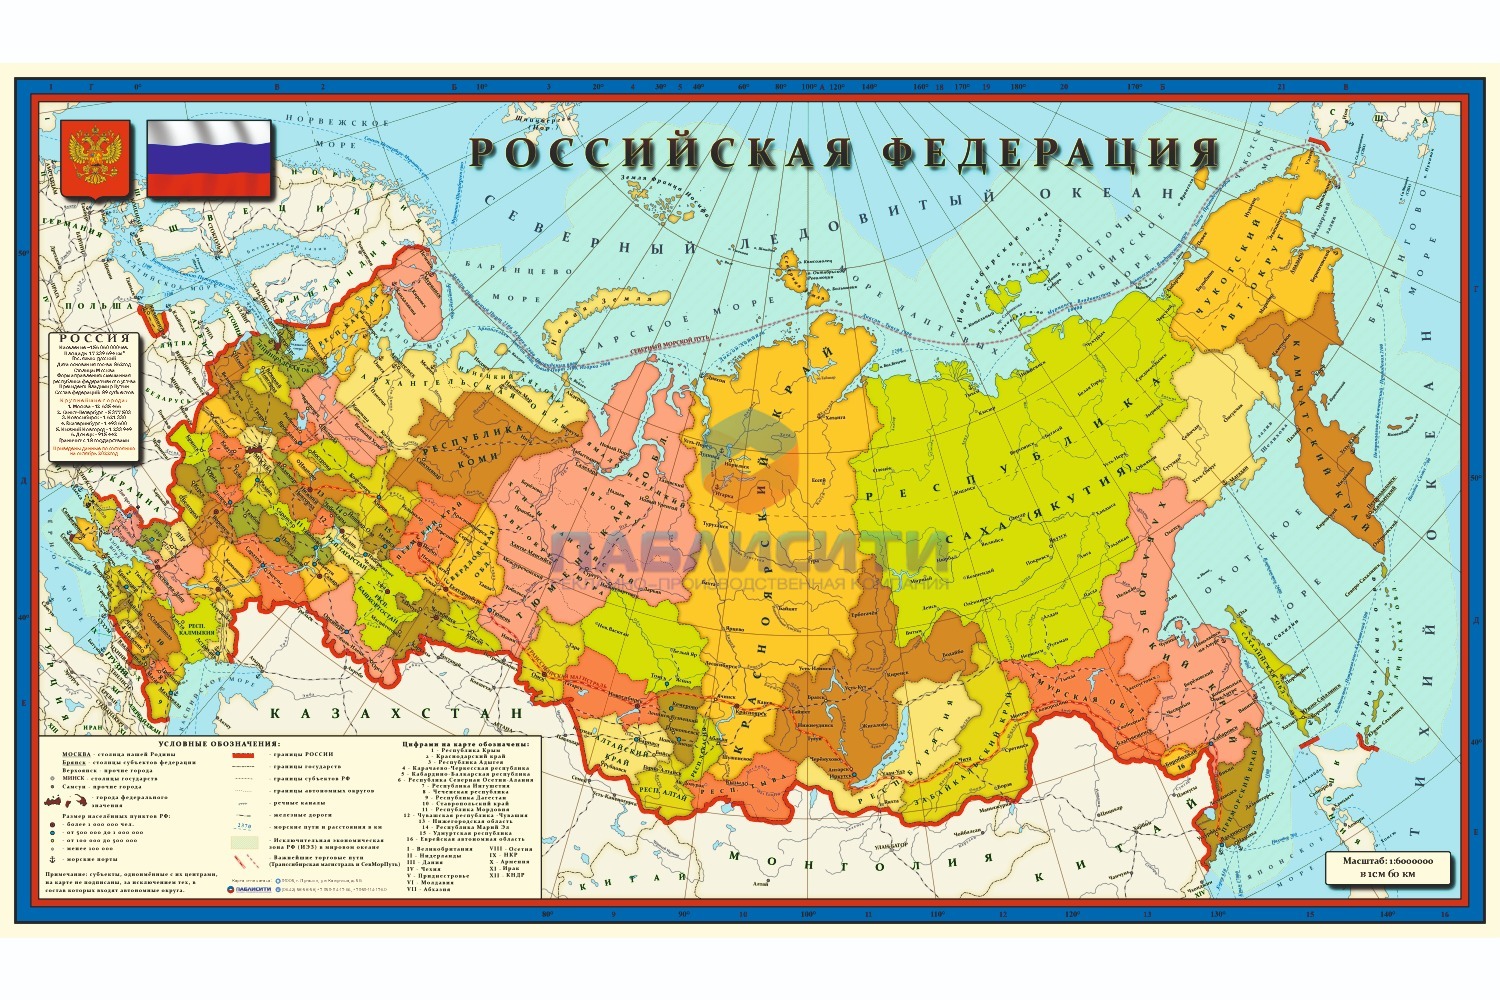 Карта Российской Федерации 1970х1150мм, в 1см 60км